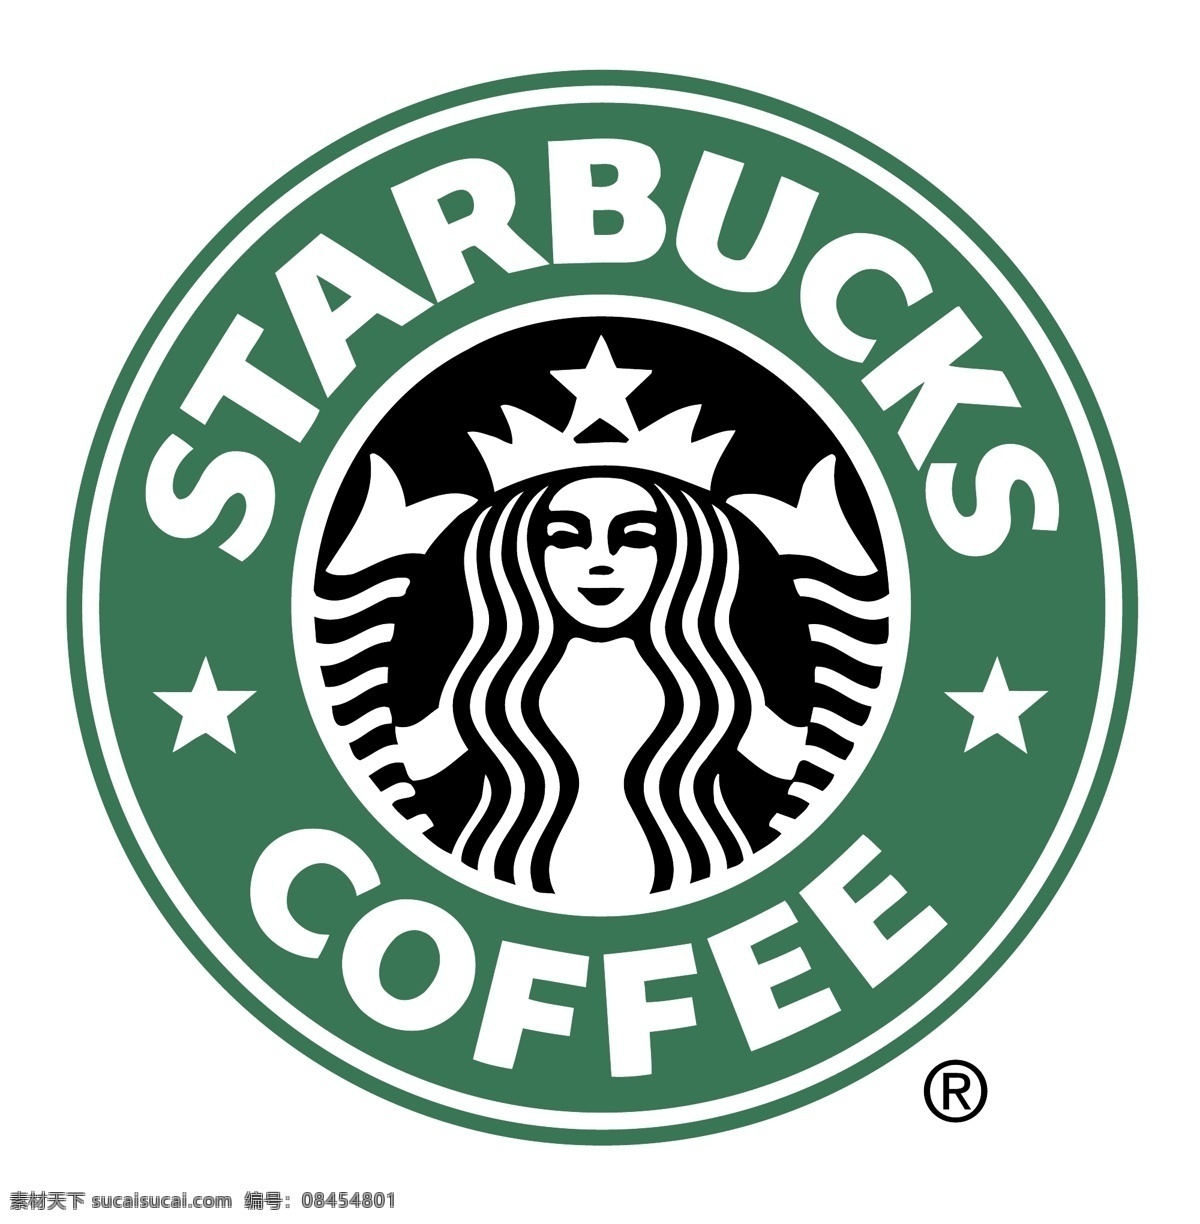 星 巴克 logo1 星巴克 logo 星巴克图案 星巴克标志 咖啡店 标志图标 公共标识标志